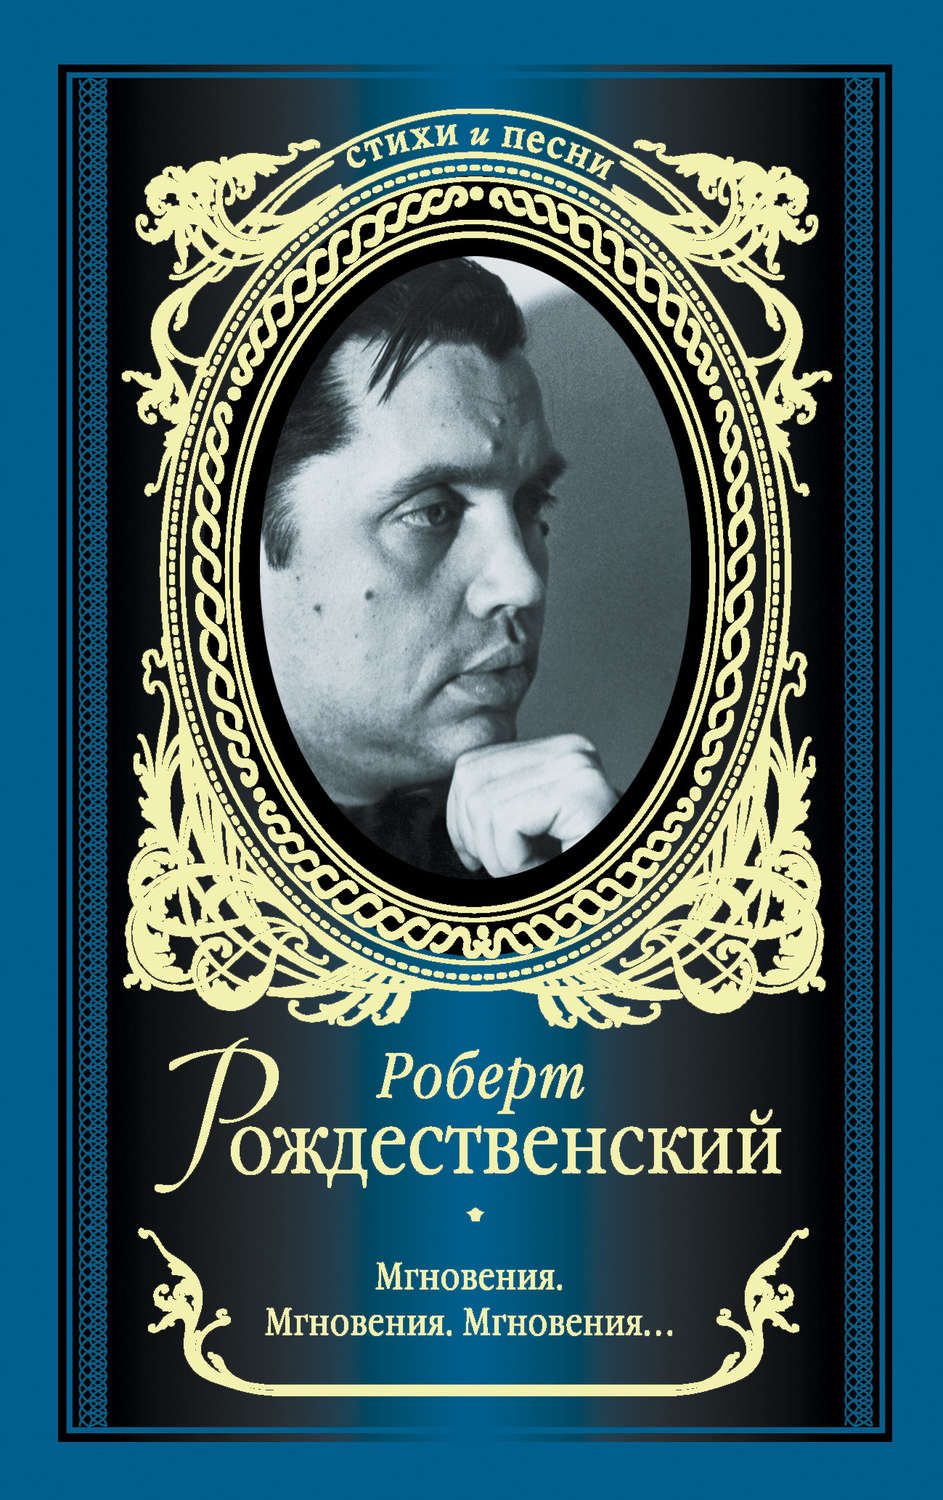 Роберт Иванович Рождественский обложки книг